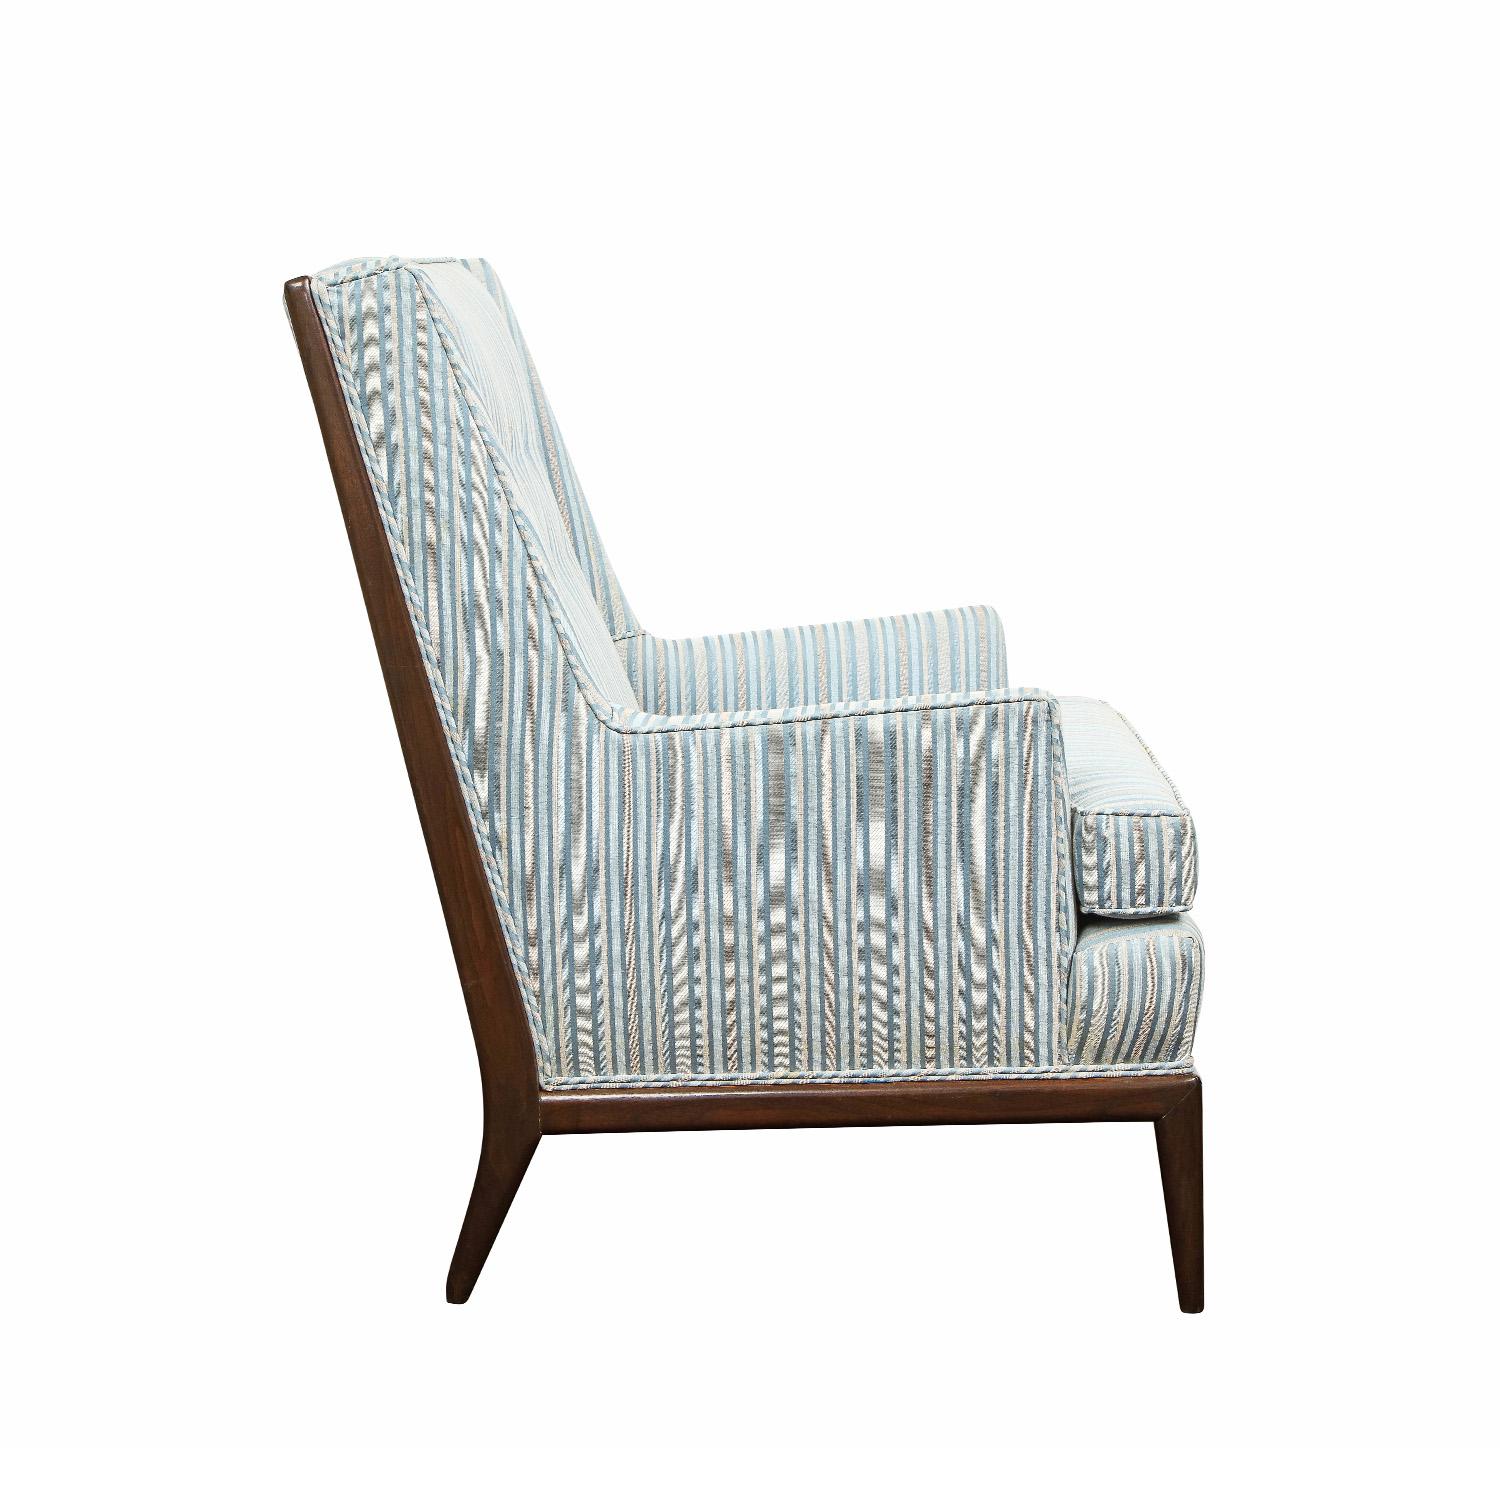 Mid-Century Modern T.H. Robsjohn-Gibbings Style High Back Lounge Chair, 1950s For Sale